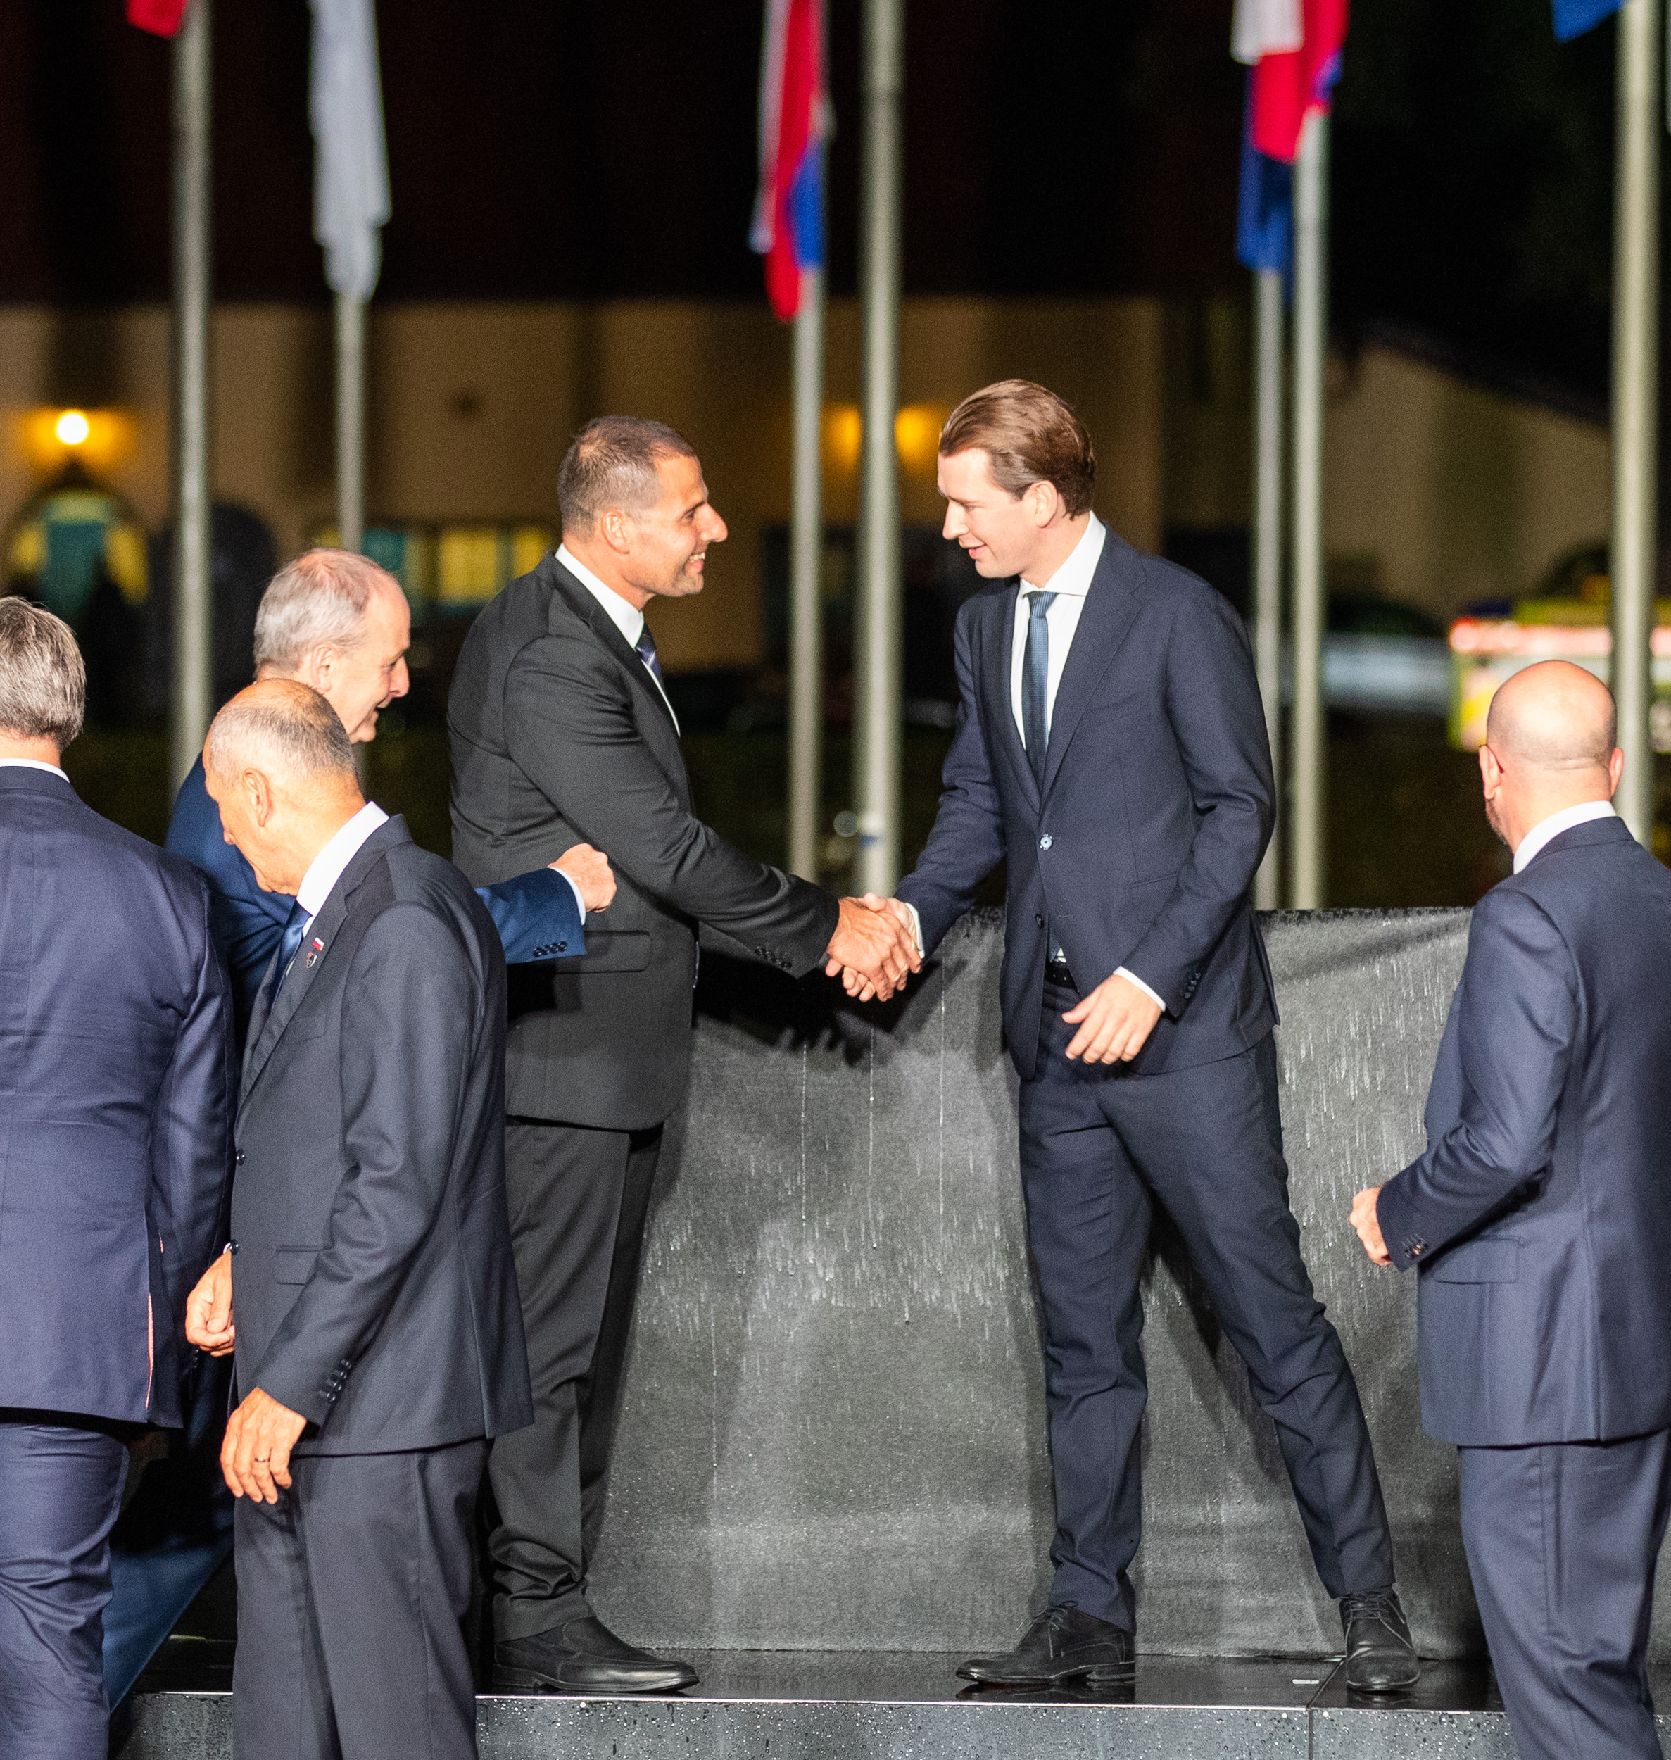 Am 5. Oktober 2021 nahm Bundeskanzler Sebastian Kurz (r.) am informellen Europäischen Rat in Slowenien teil. Im Bild beim Gruppenfoto.